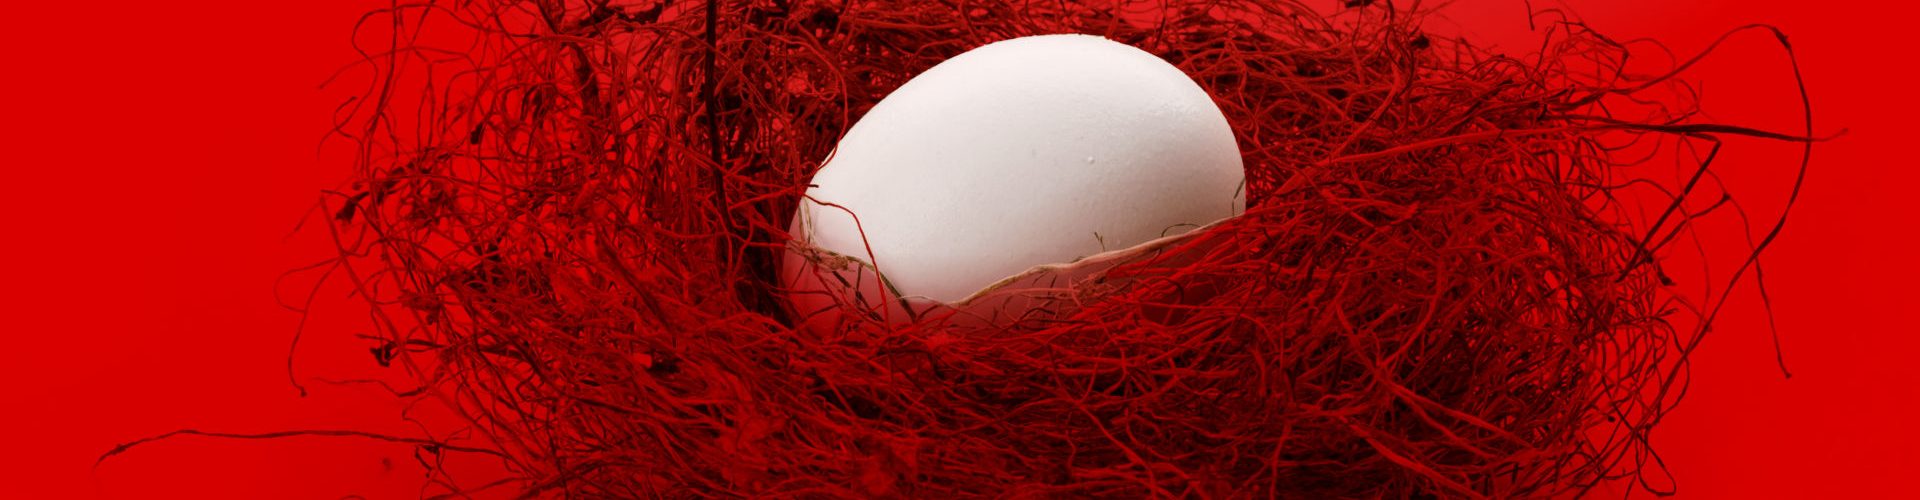 Oeuf blanc sur un nid avec fond rouge